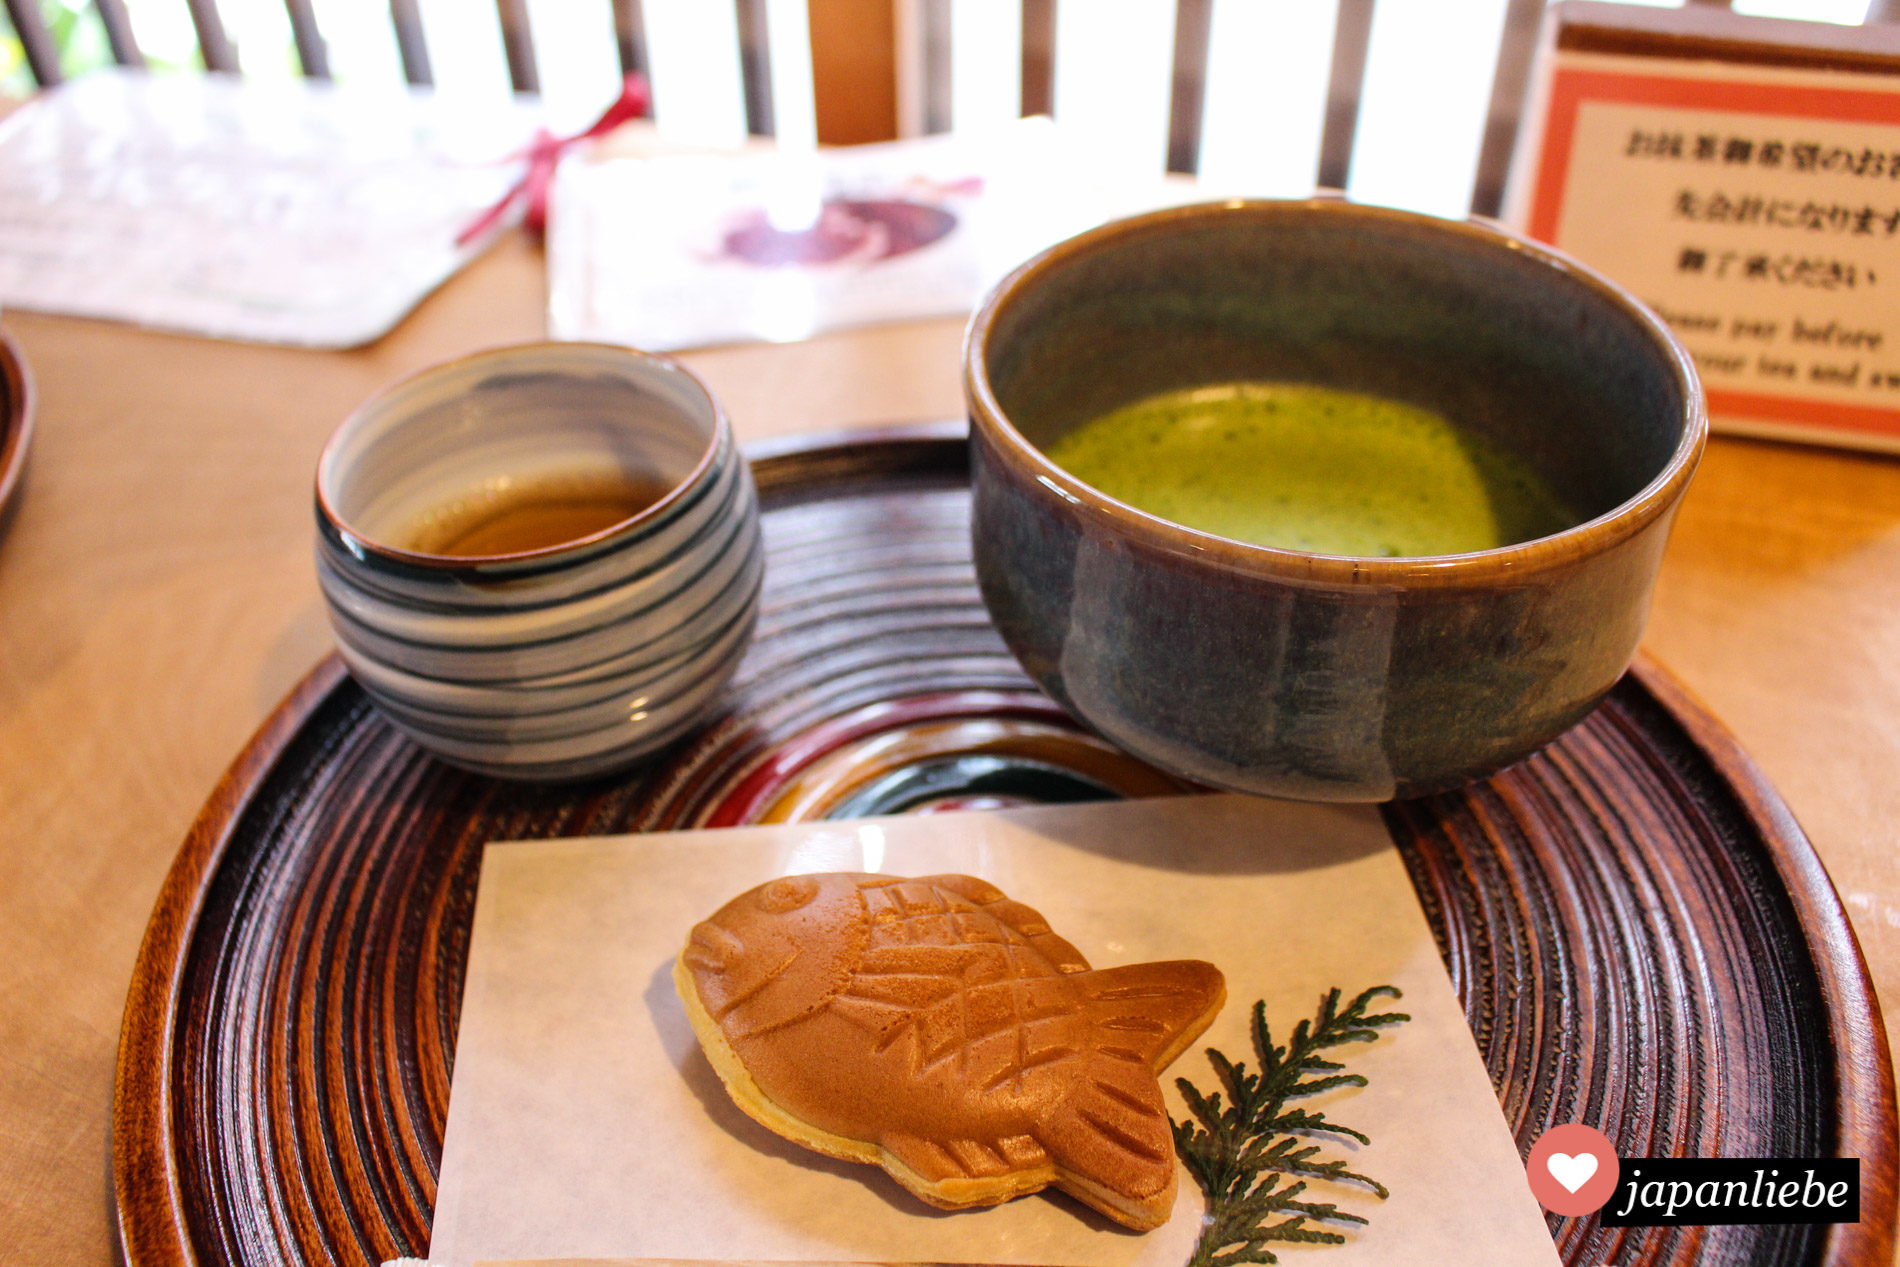 Ein Set bestehend aus Tee und japanischer Süßigkeit (wie hier Taiyaki) sollte man sich bei Tourindou unbedingt gönnen.